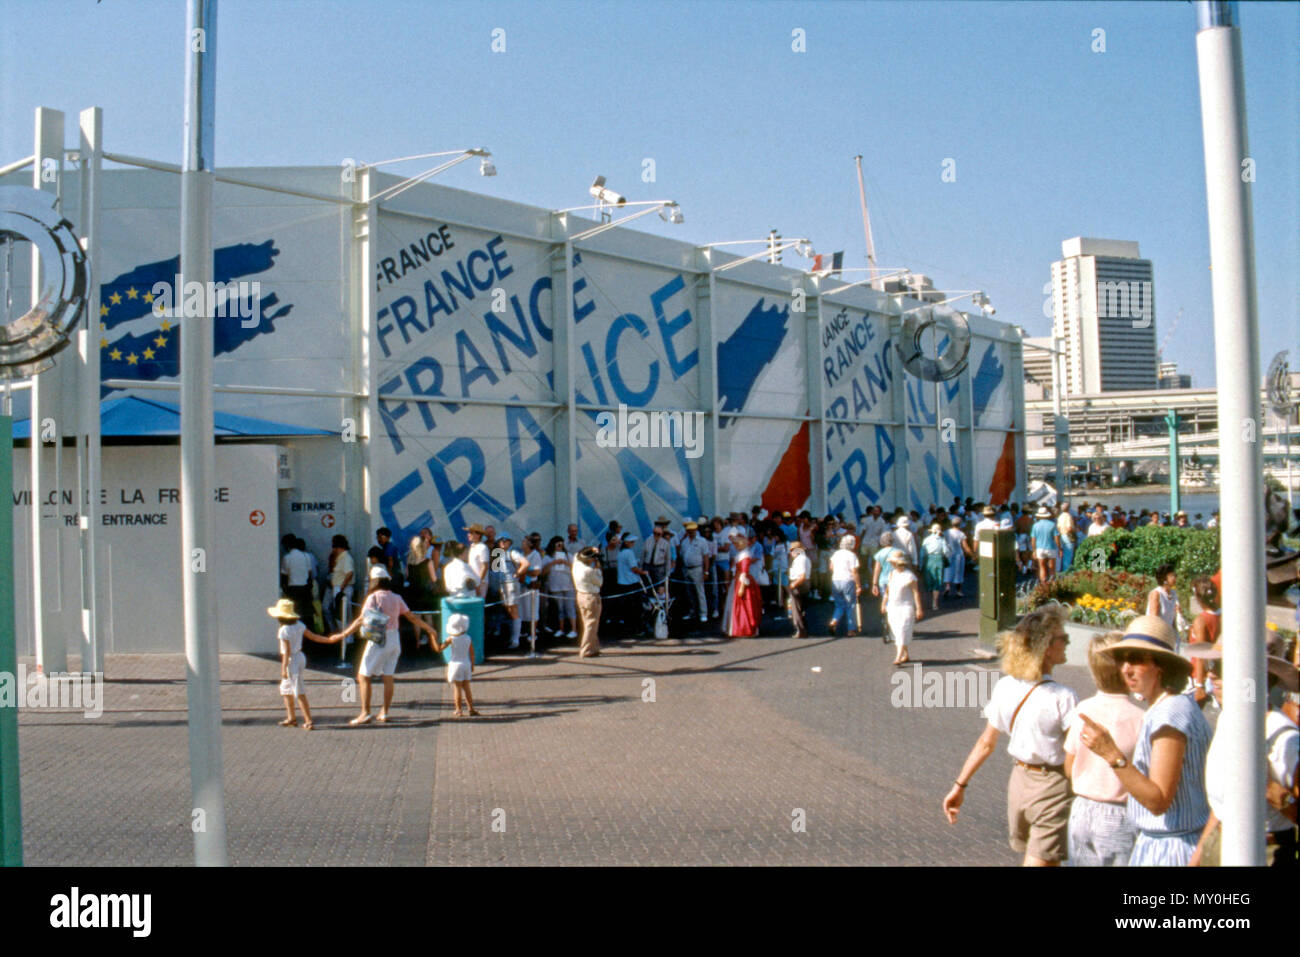 Expo 88 Frankreich Pavillon Fassade, Brisbane, Oktober 1988. Offizielle Foto von der Exposition und South Bank Brisbane Wiederentwicklung-berechtigung. Stockfoto